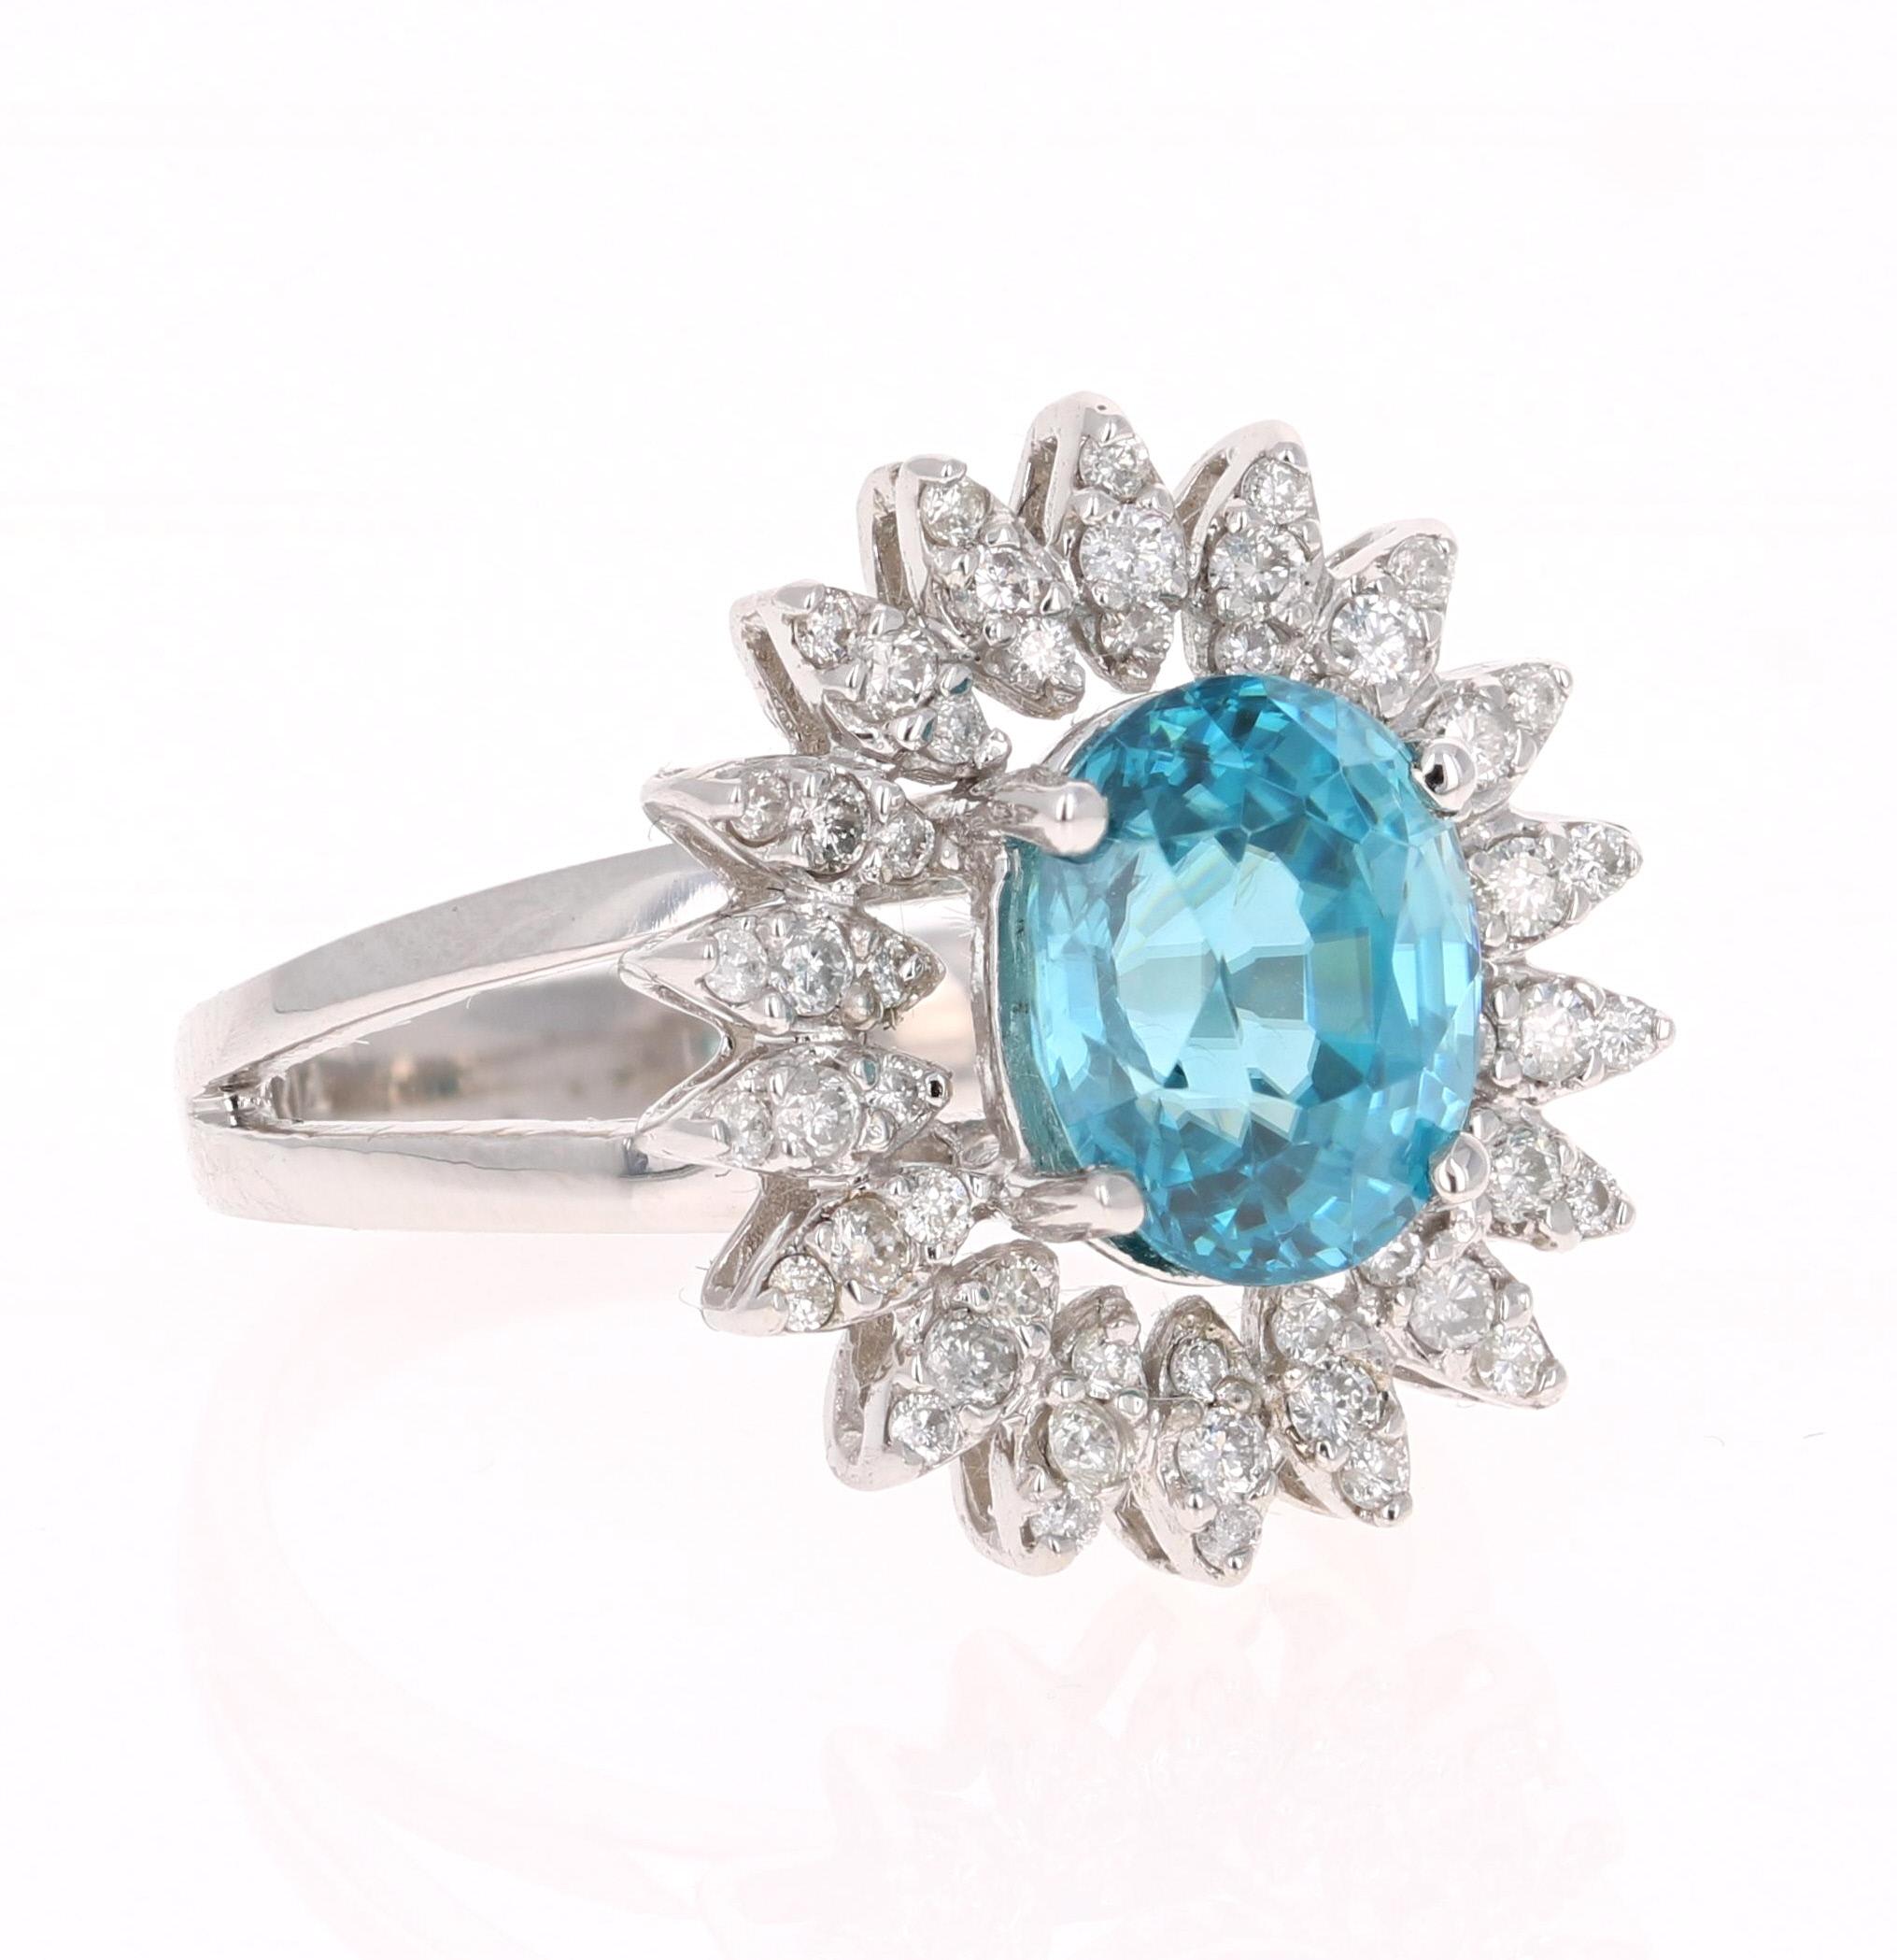 Ein schillernder Ring aus blauem Zirkon und Diamant! Blauer Zirkon ist ein Naturstein, der in verschiedenen Teilen der Welt abgebaut wird, vor allem in Sri Lanka, Myanmar und Australien. 

Dieser blaue Zirkon im Ovalschliff hat 4,26 Karat und ist